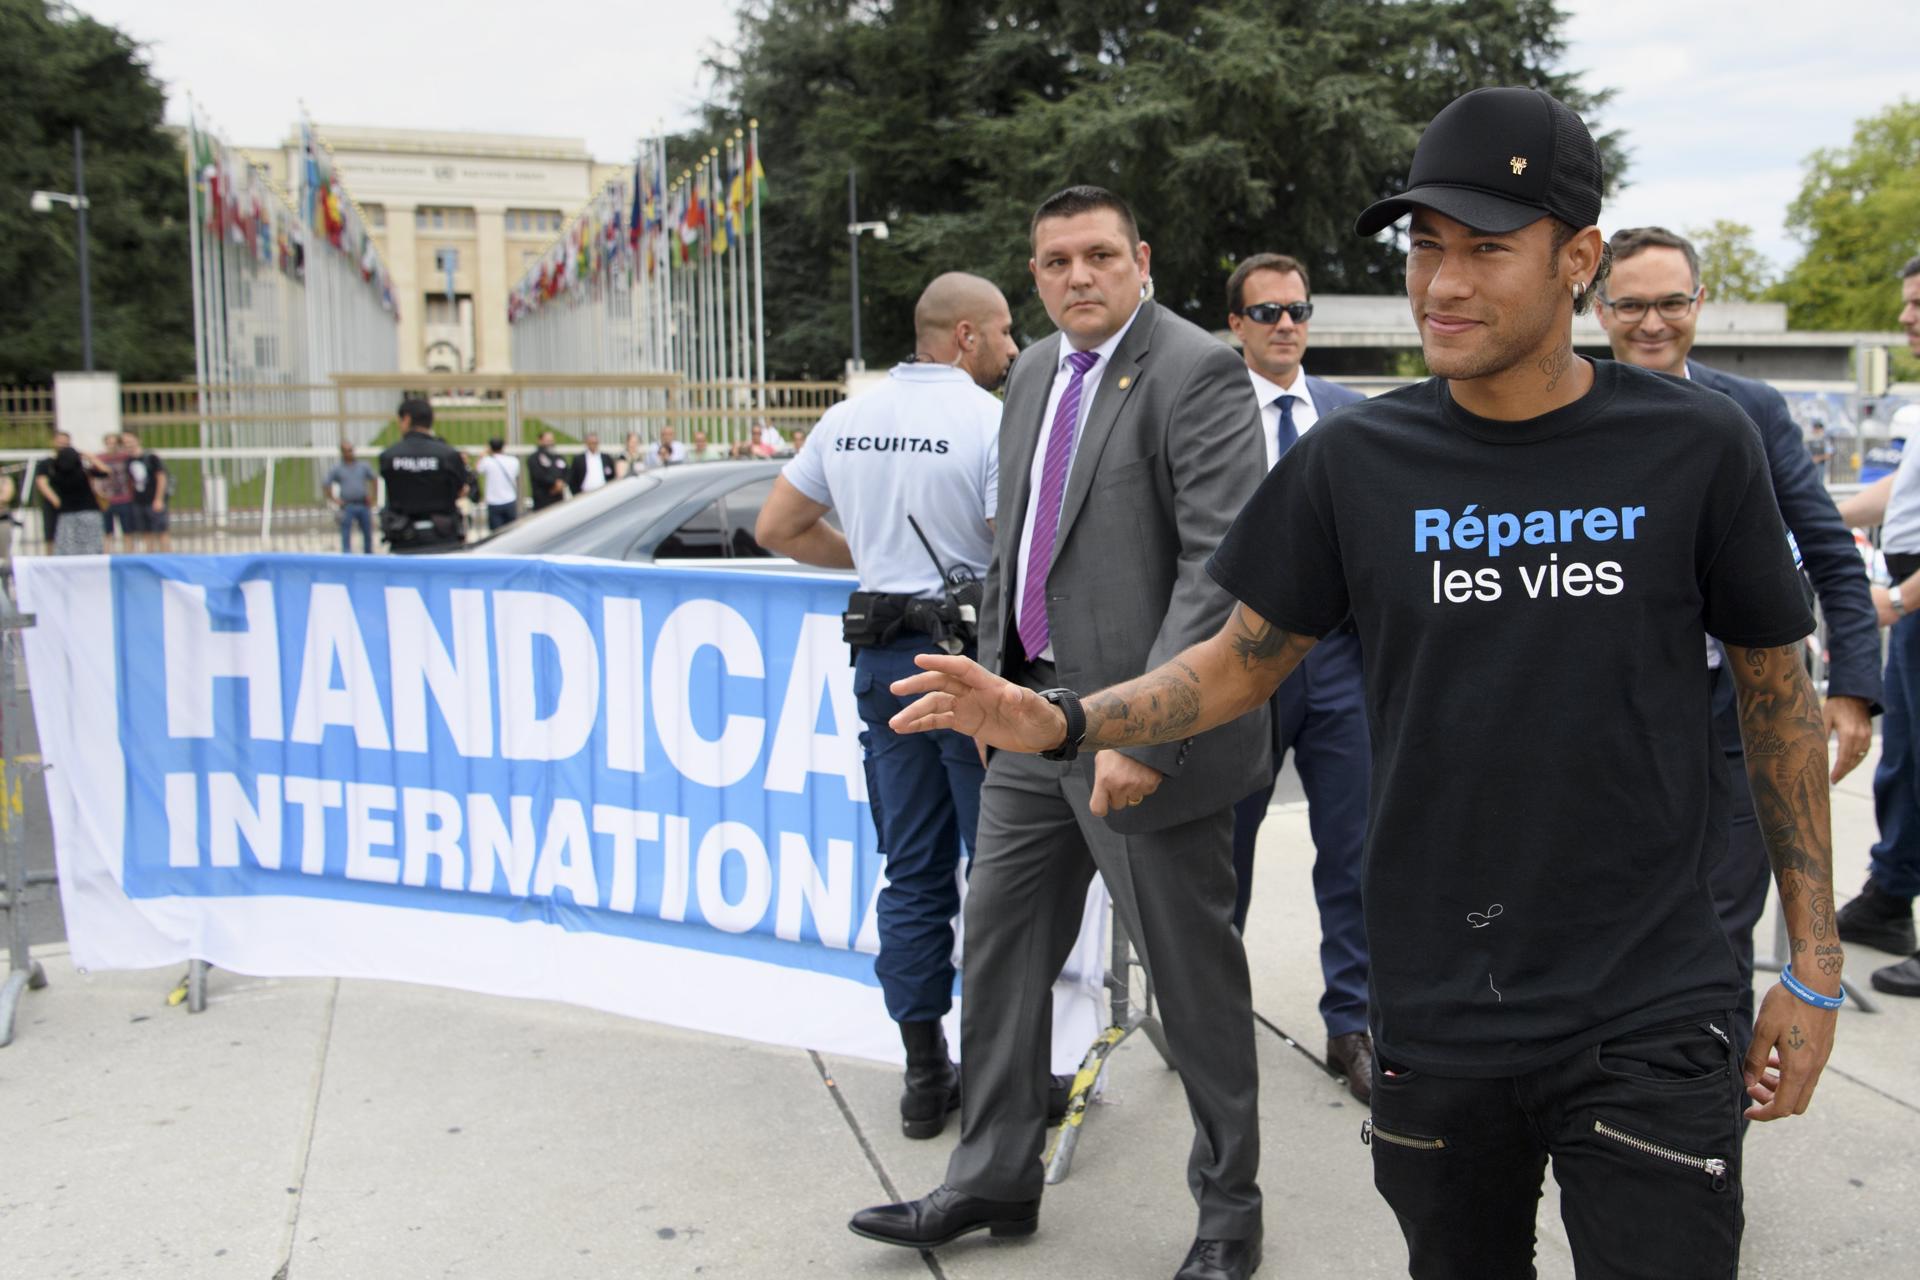 Foto archivo. El jugador brasileño del París Saint Germain (PSG), Neymar Jr., saluda a su llegada a la presentación como embajador de buena voluntad de la ONG Handicap International, en Ginebra, Suiza, EFE/Laurent Gillieron